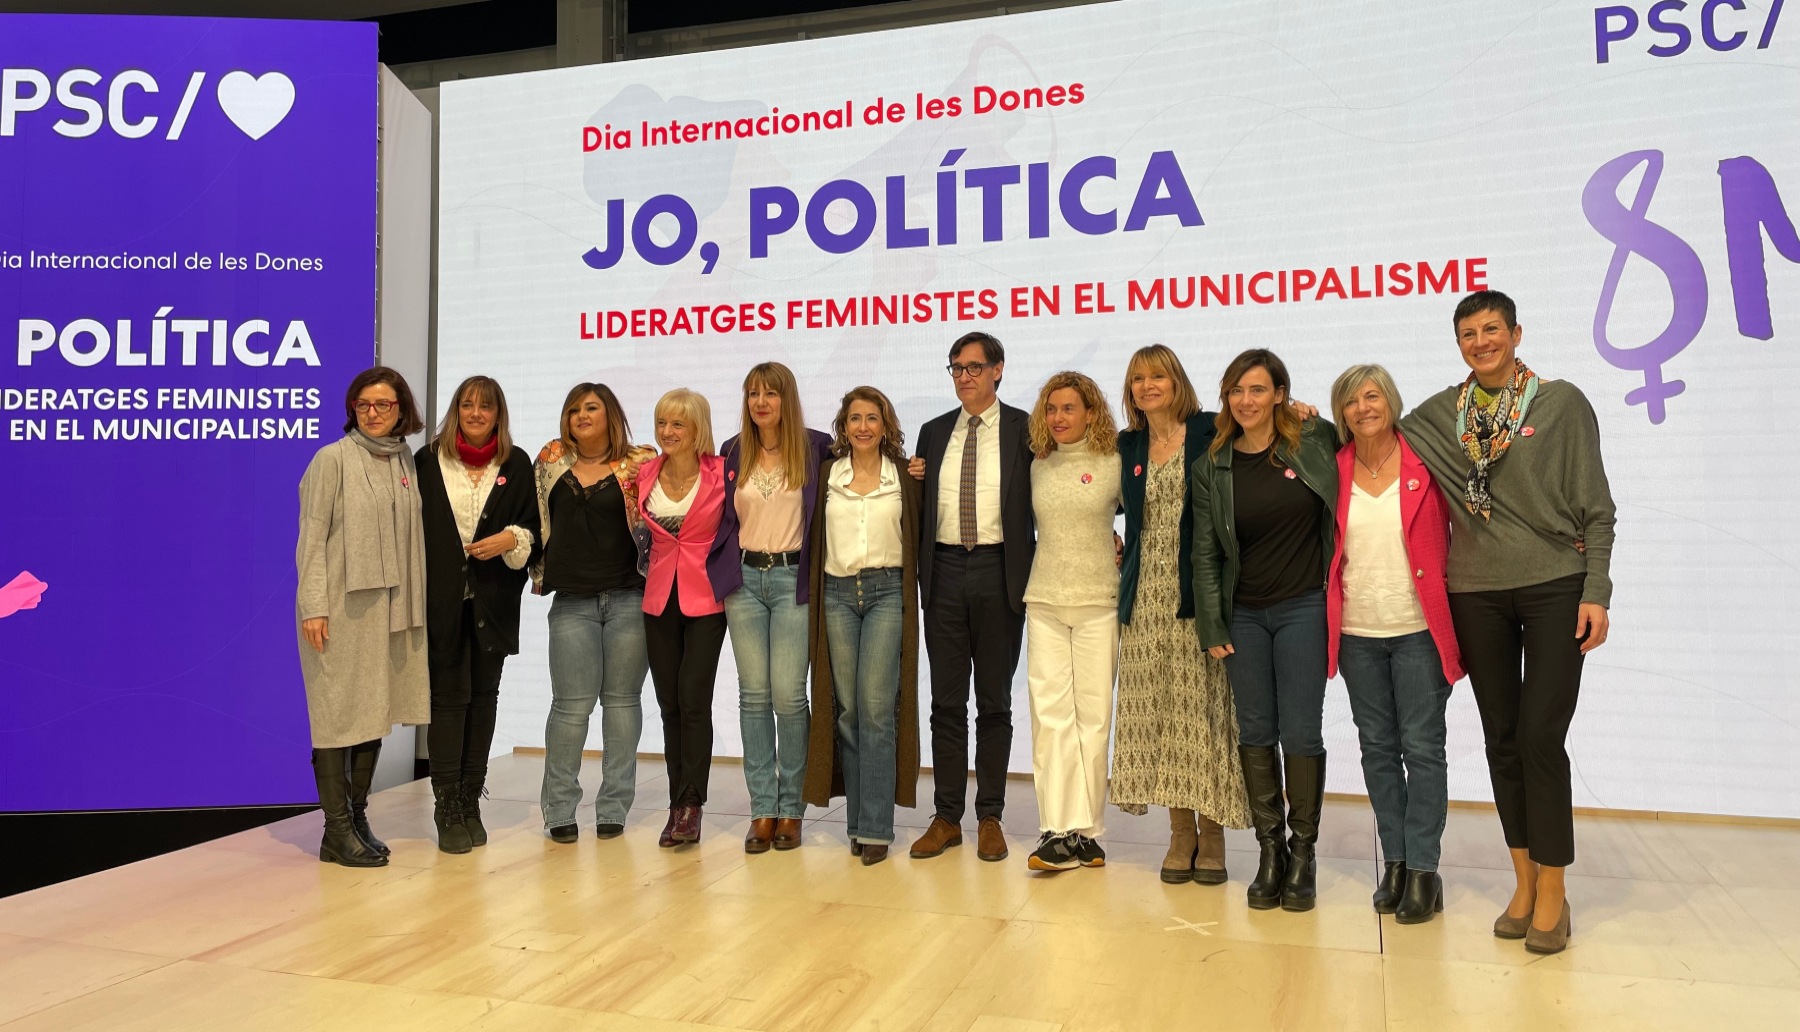 Raquel Sánchez, Salvador Illa y Meritxell Batet, con otras candidatas a la alcaldía y alcaldesas de municipios catalanes.